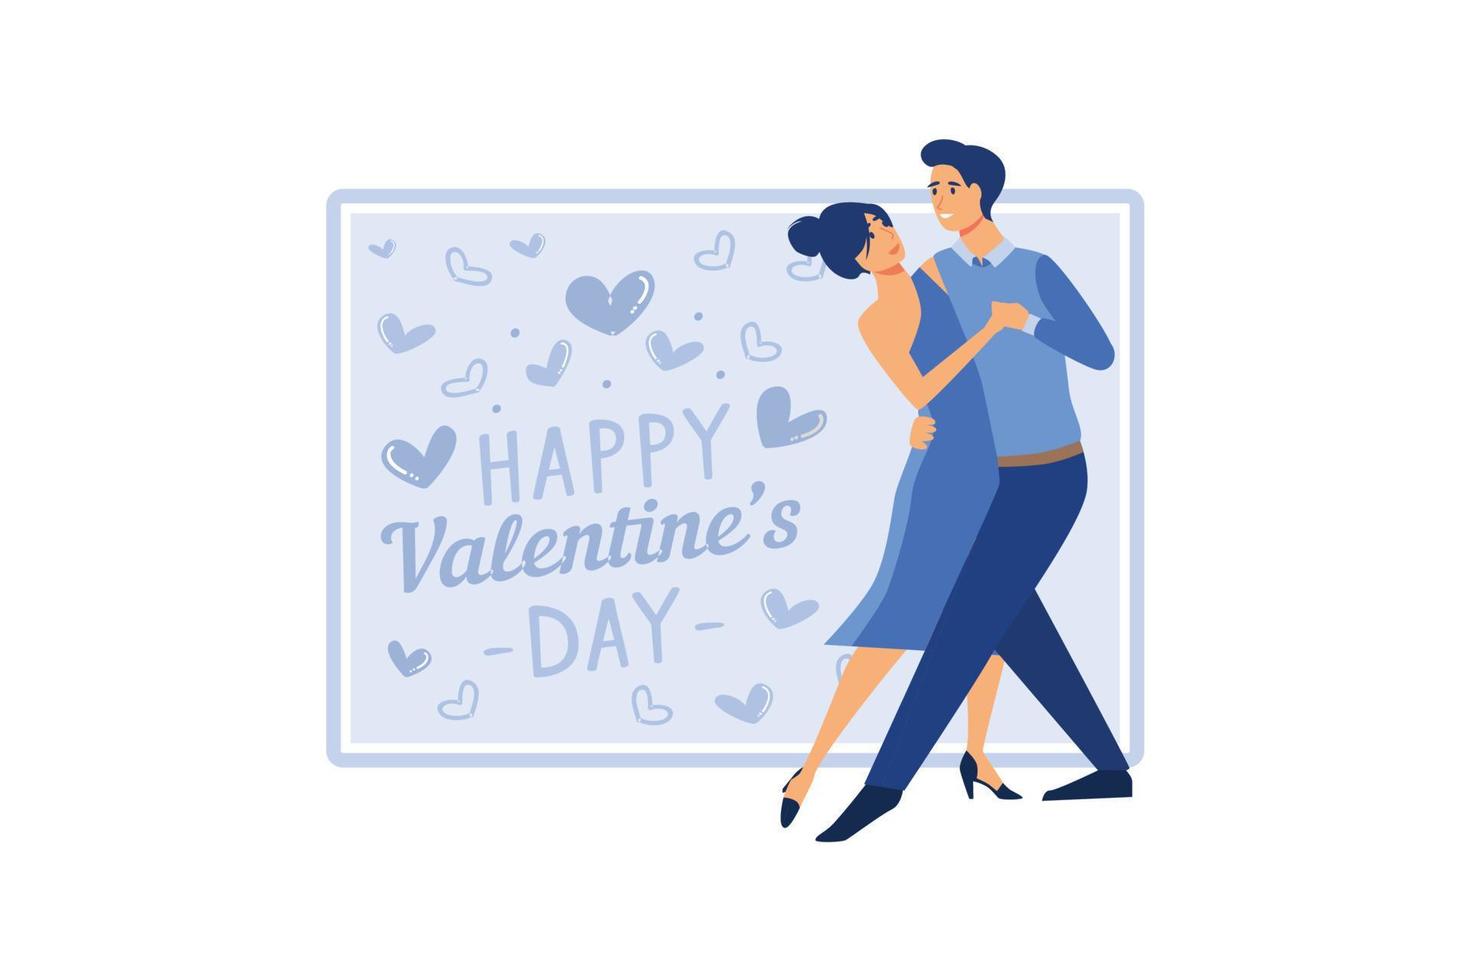 Casal apaixonado. feliz Dia dos namorados. 14 de fevereiro é o dia de todos os amantes. gráficos adequados para decorar cartazes, folhetos, cartões postais, folhetos ilustração vetorial plana vetor